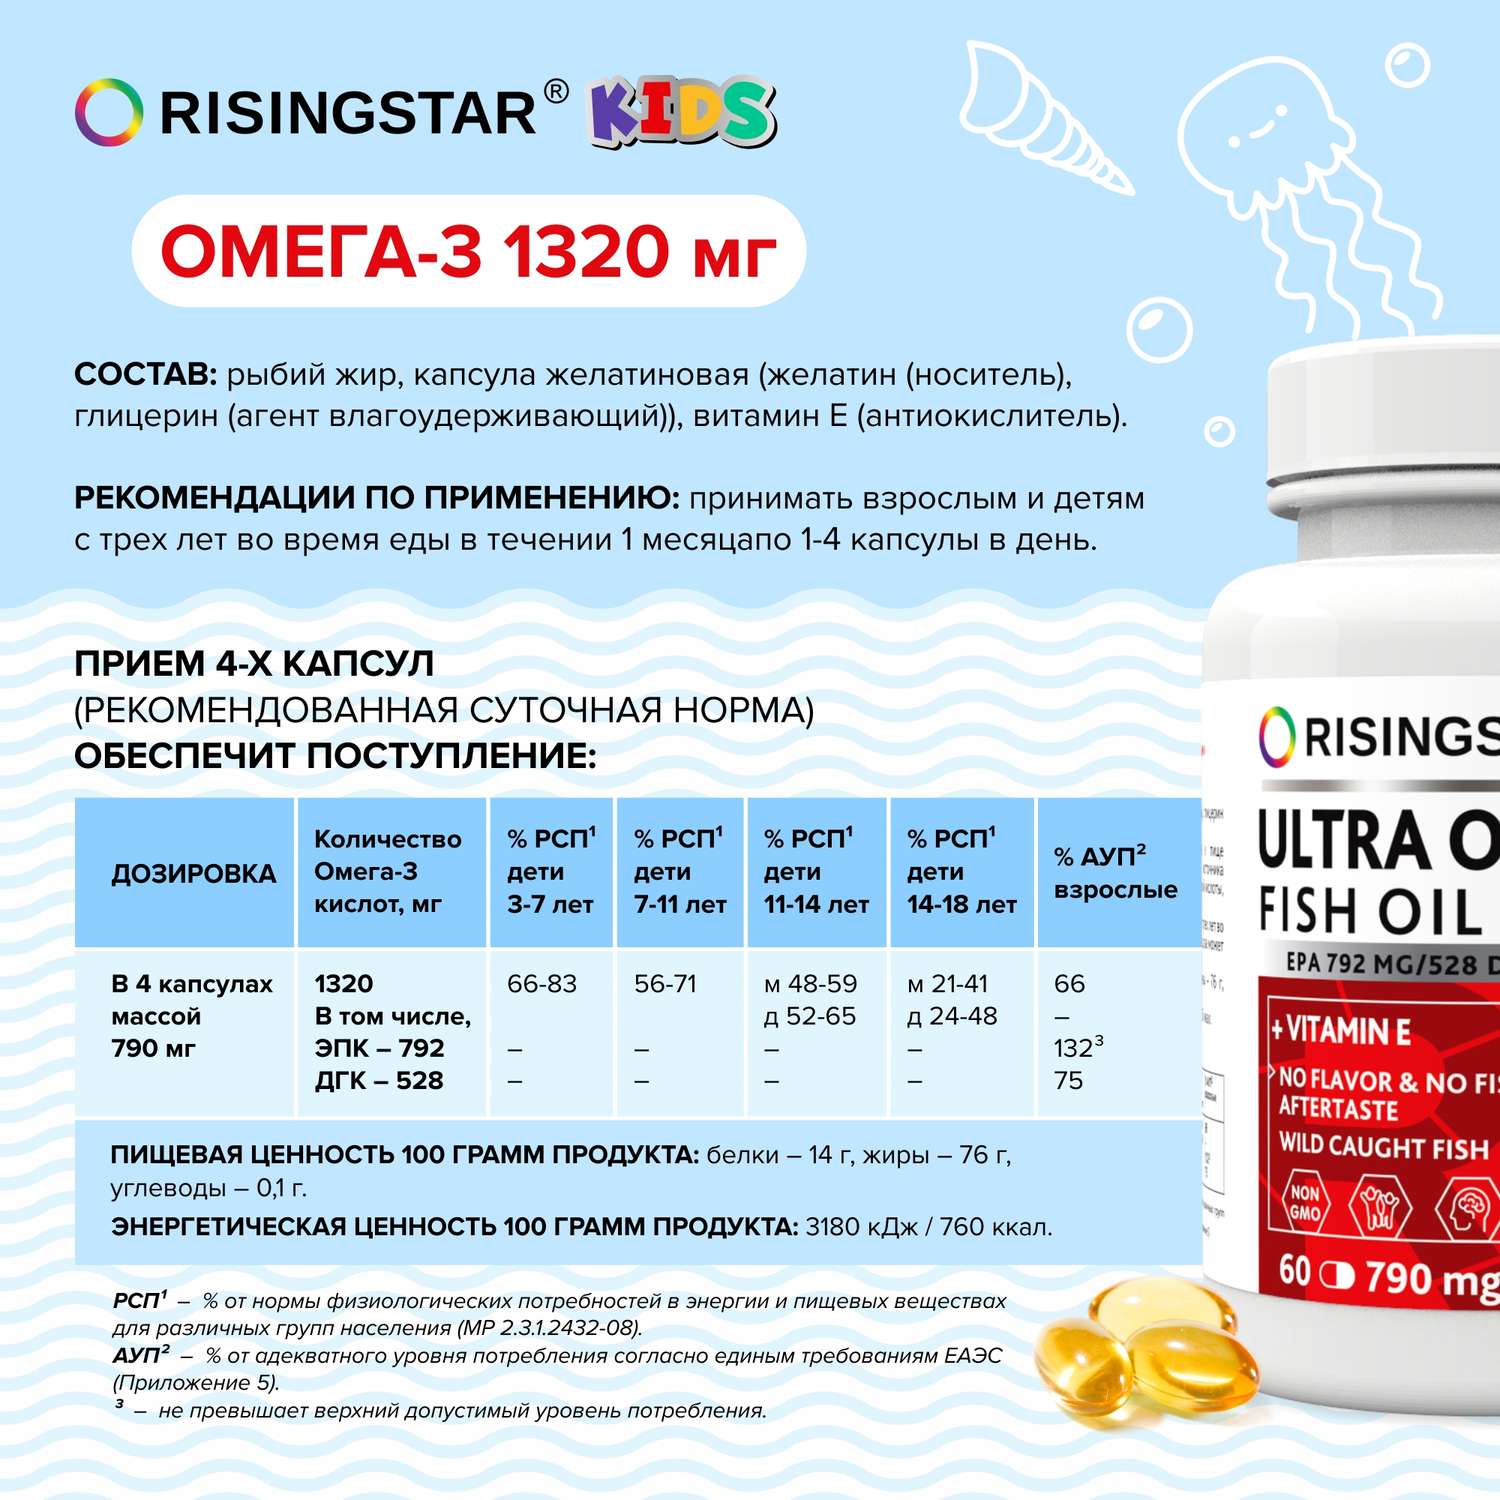 Биологически активная добавка Risingstar Омега-3 жирные кислоты высокой концентрации 790мг 60капсул - фото 2